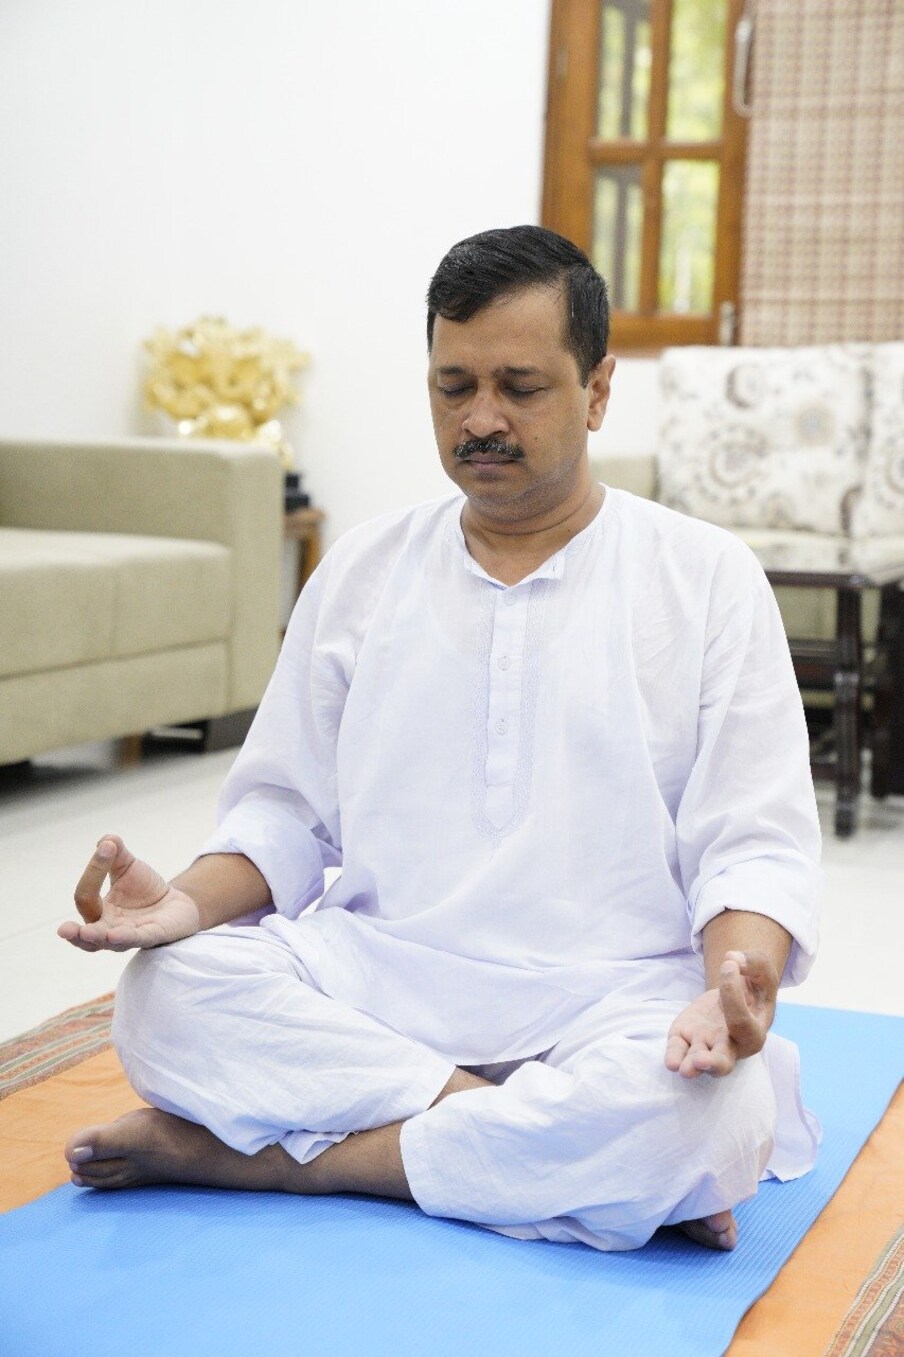  دہلی کے وزیر اعلیٰ اروند کیجریوال نے آج انٹرنیشنل یوگا ڈے کے موقع پر یوگا کیا۔